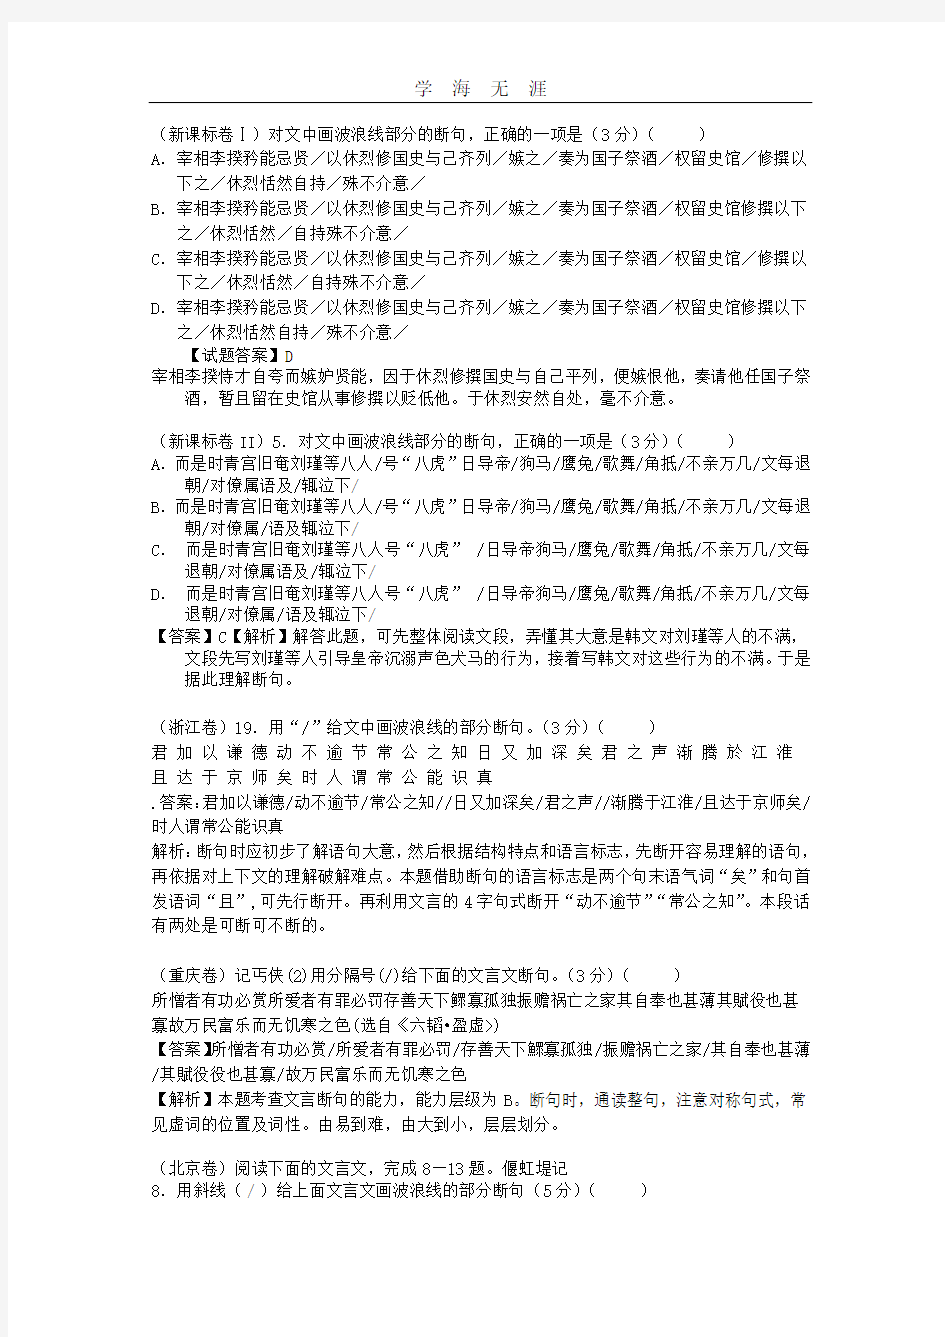 高考断句真题练习(自留).pdf